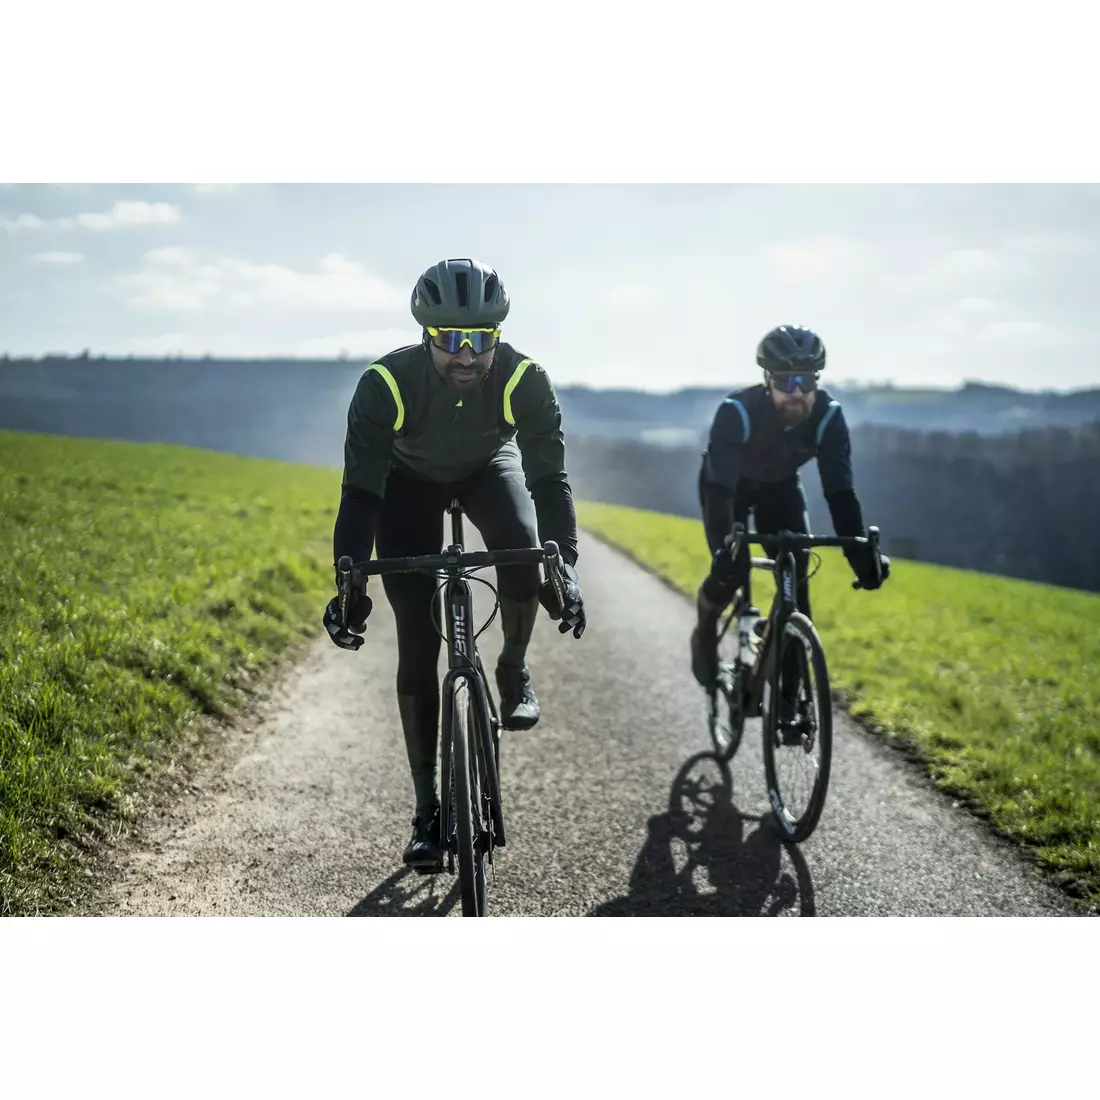 Rogelli Pánská lehká cyklistická bunda, softshell INFINITE, zelená, ROG351048